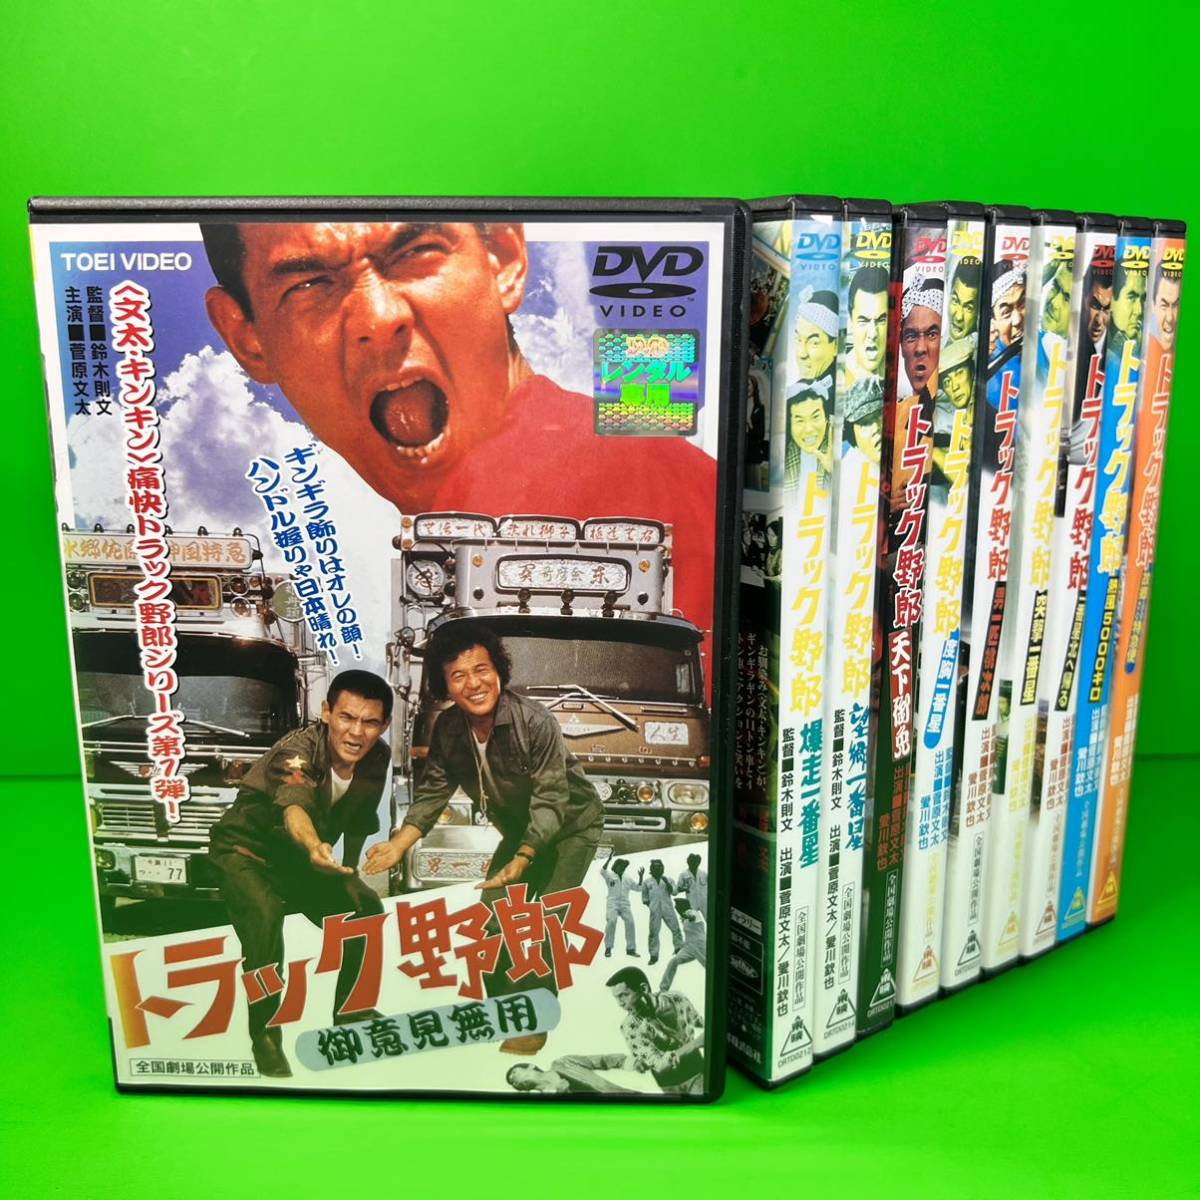 トラック野郎 DVD シリーズ 全10巻 全巻セット 送料無料 / 匿名配送